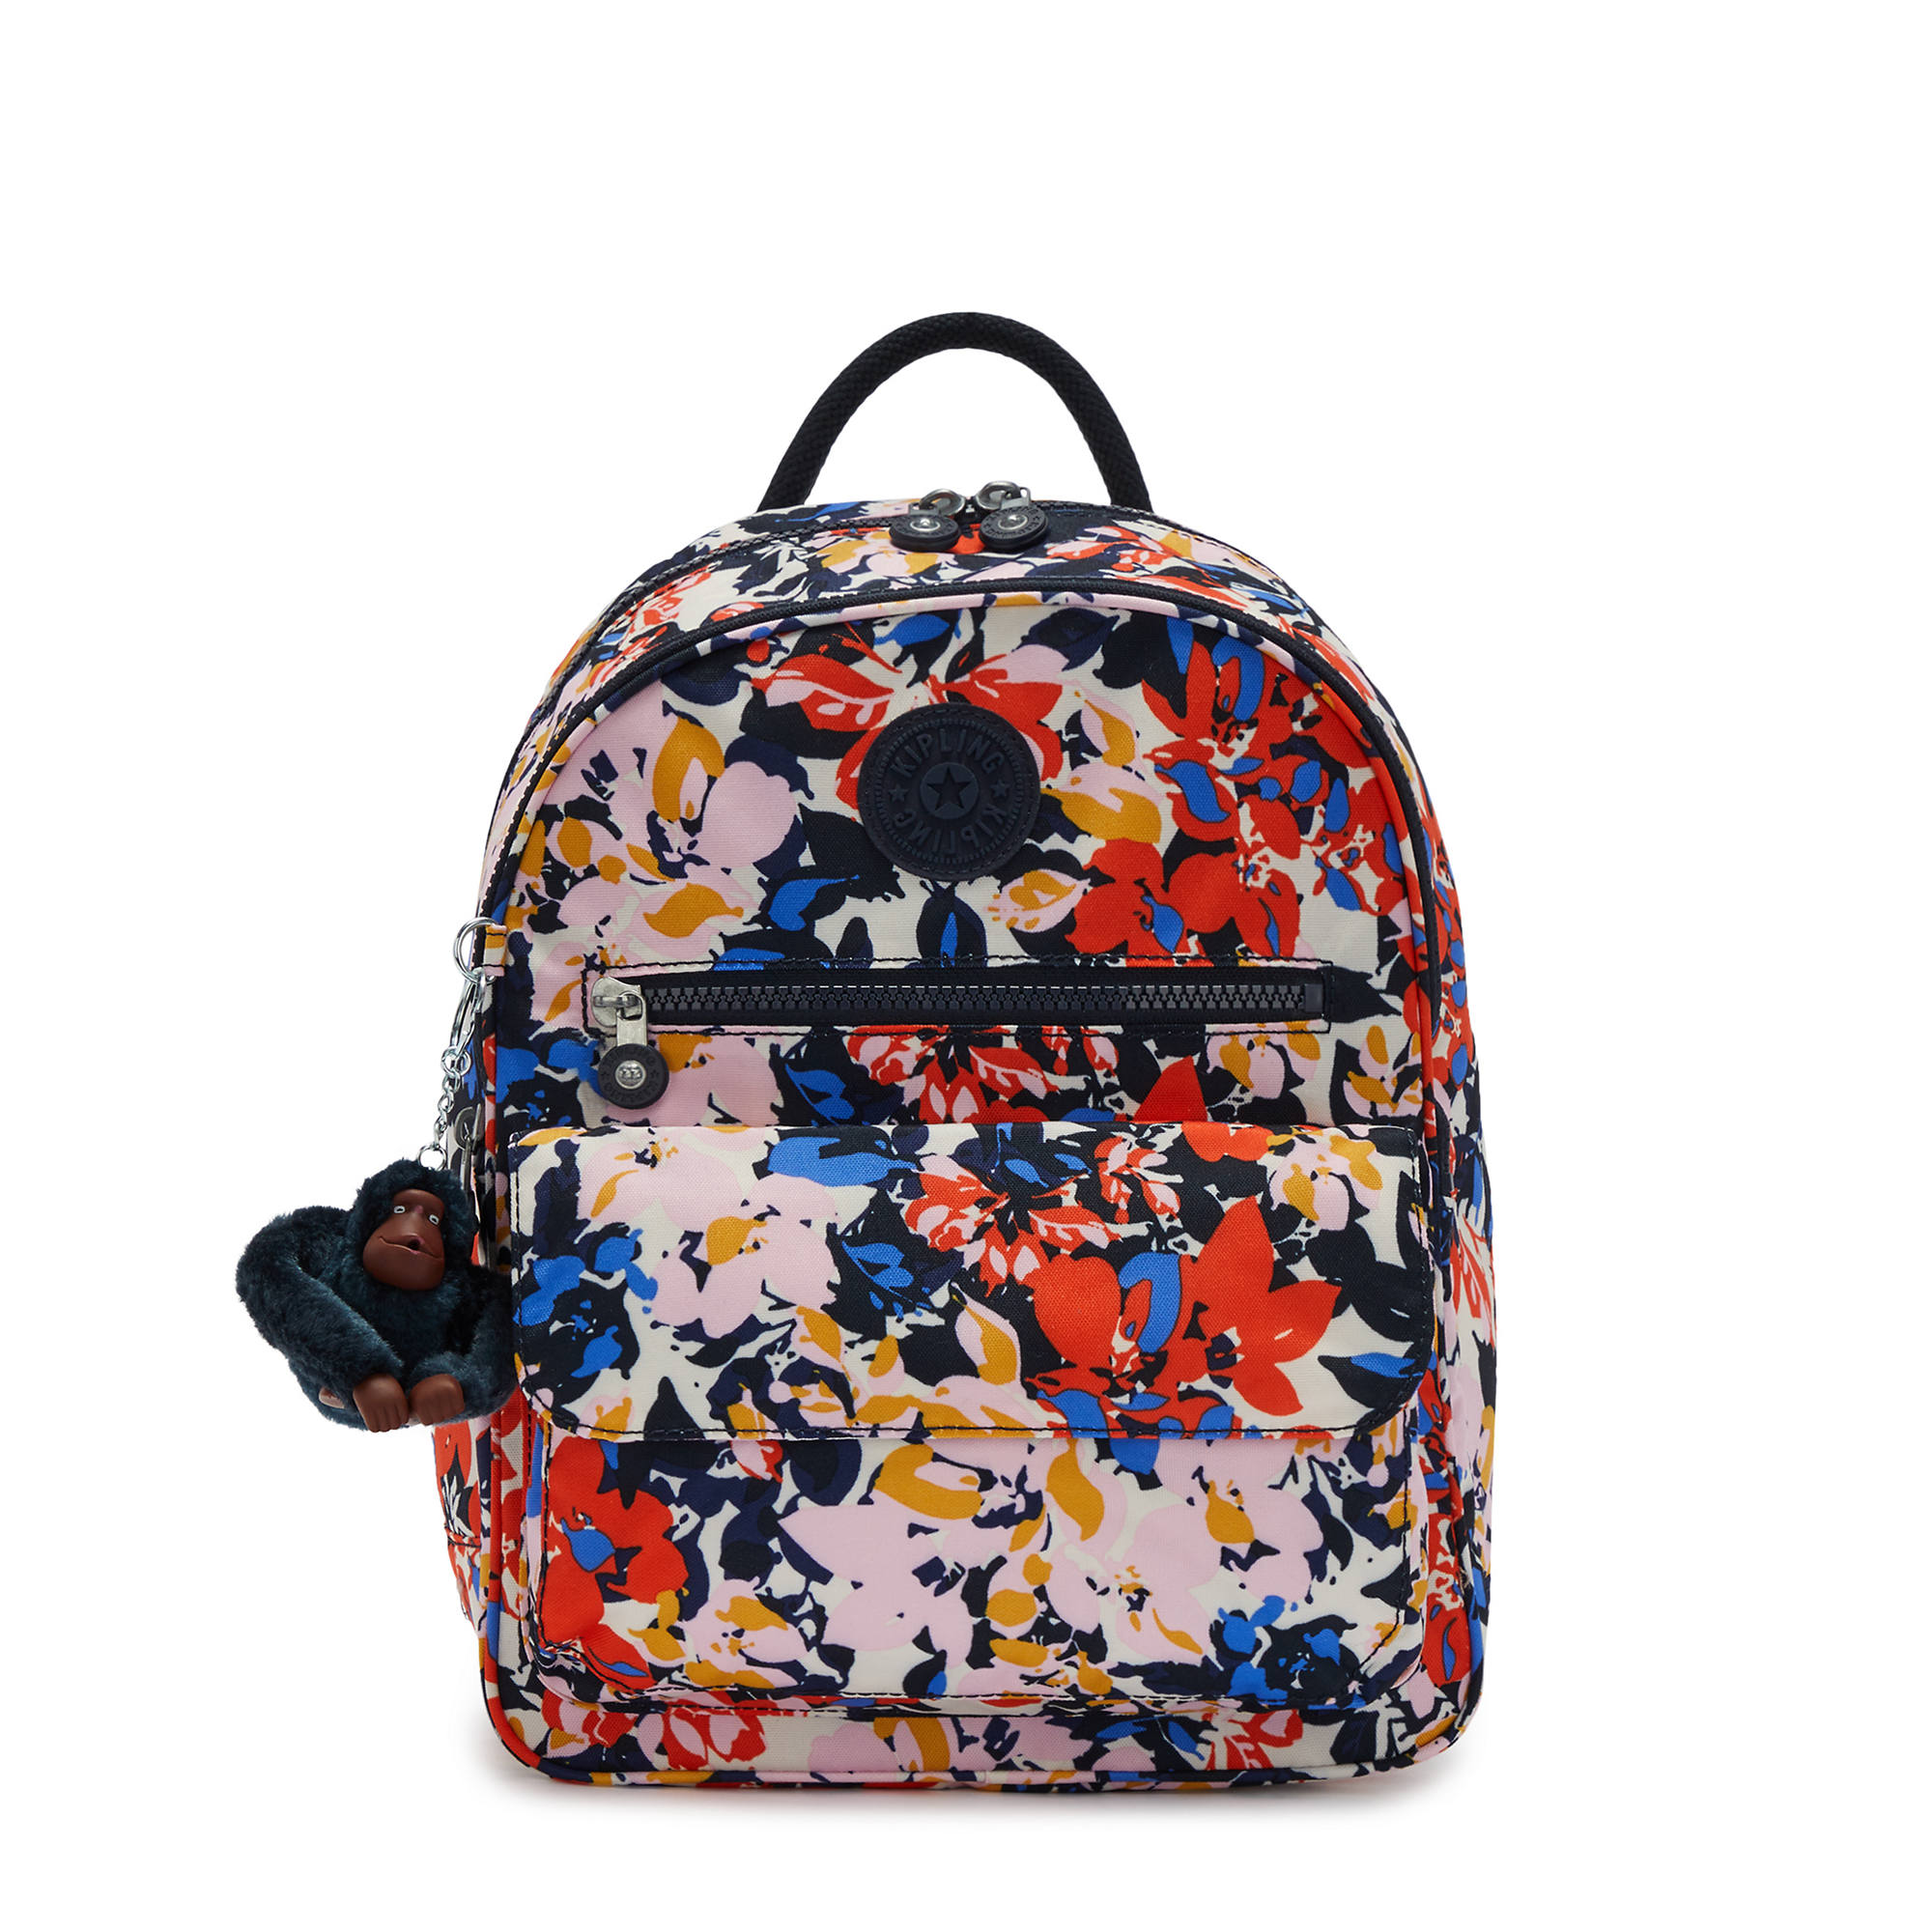 REFINED KELLY MINI BACKPACK JY16642-UE > Shoulder Bags, Backpack